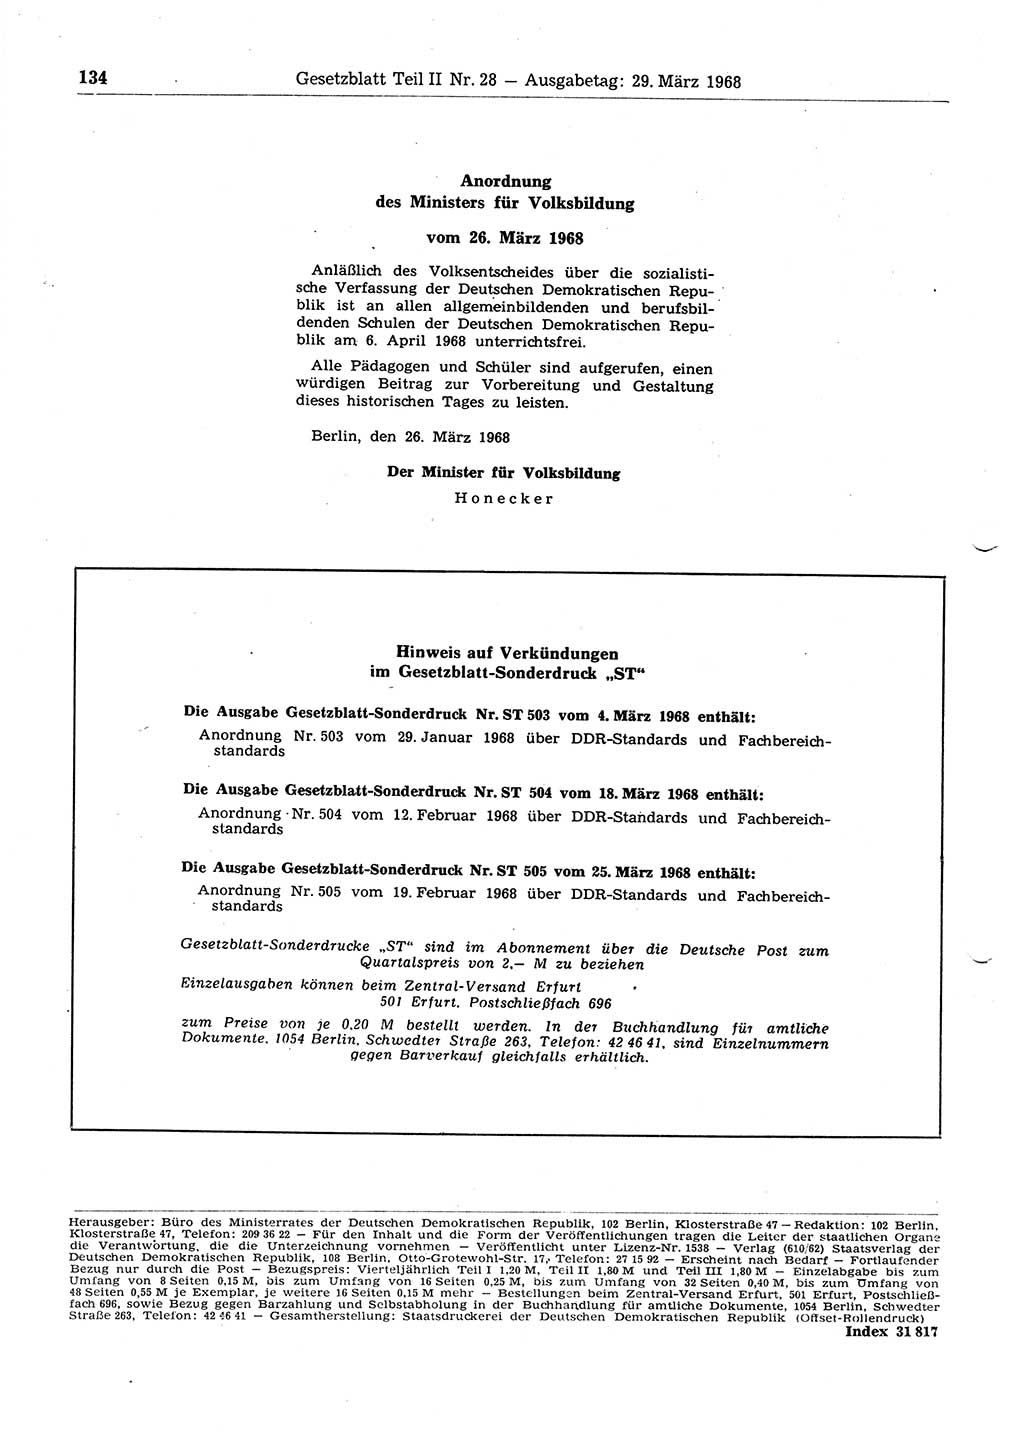 Gesetzblatt (GBl.) der Deutschen Demokratischen Republik (DDR) Teil ⅠⅠ 1968, Seite 134 (GBl. DDR ⅠⅠ 1968, S. 134)